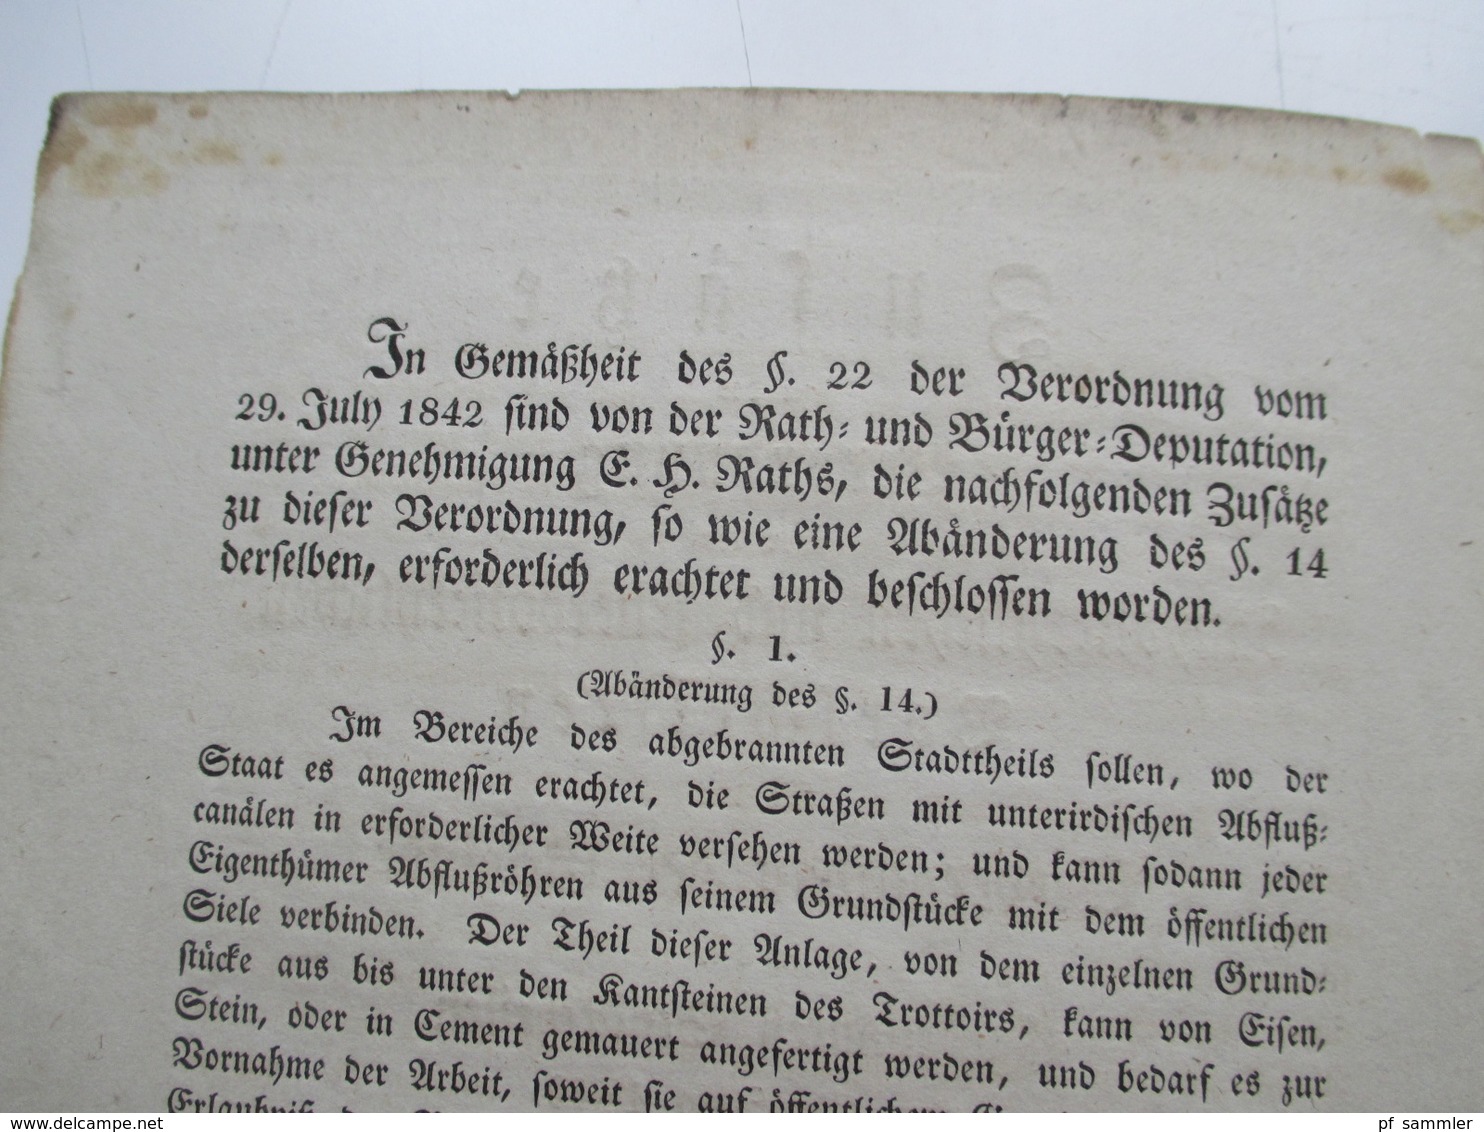 Original Dokument Zusätze Zur Verordnung Zum Wiederaufbau Gebäude In Den Abgebrannten Stadtteilen Hamburger Brand 1842 - Gesetze & Erlasse